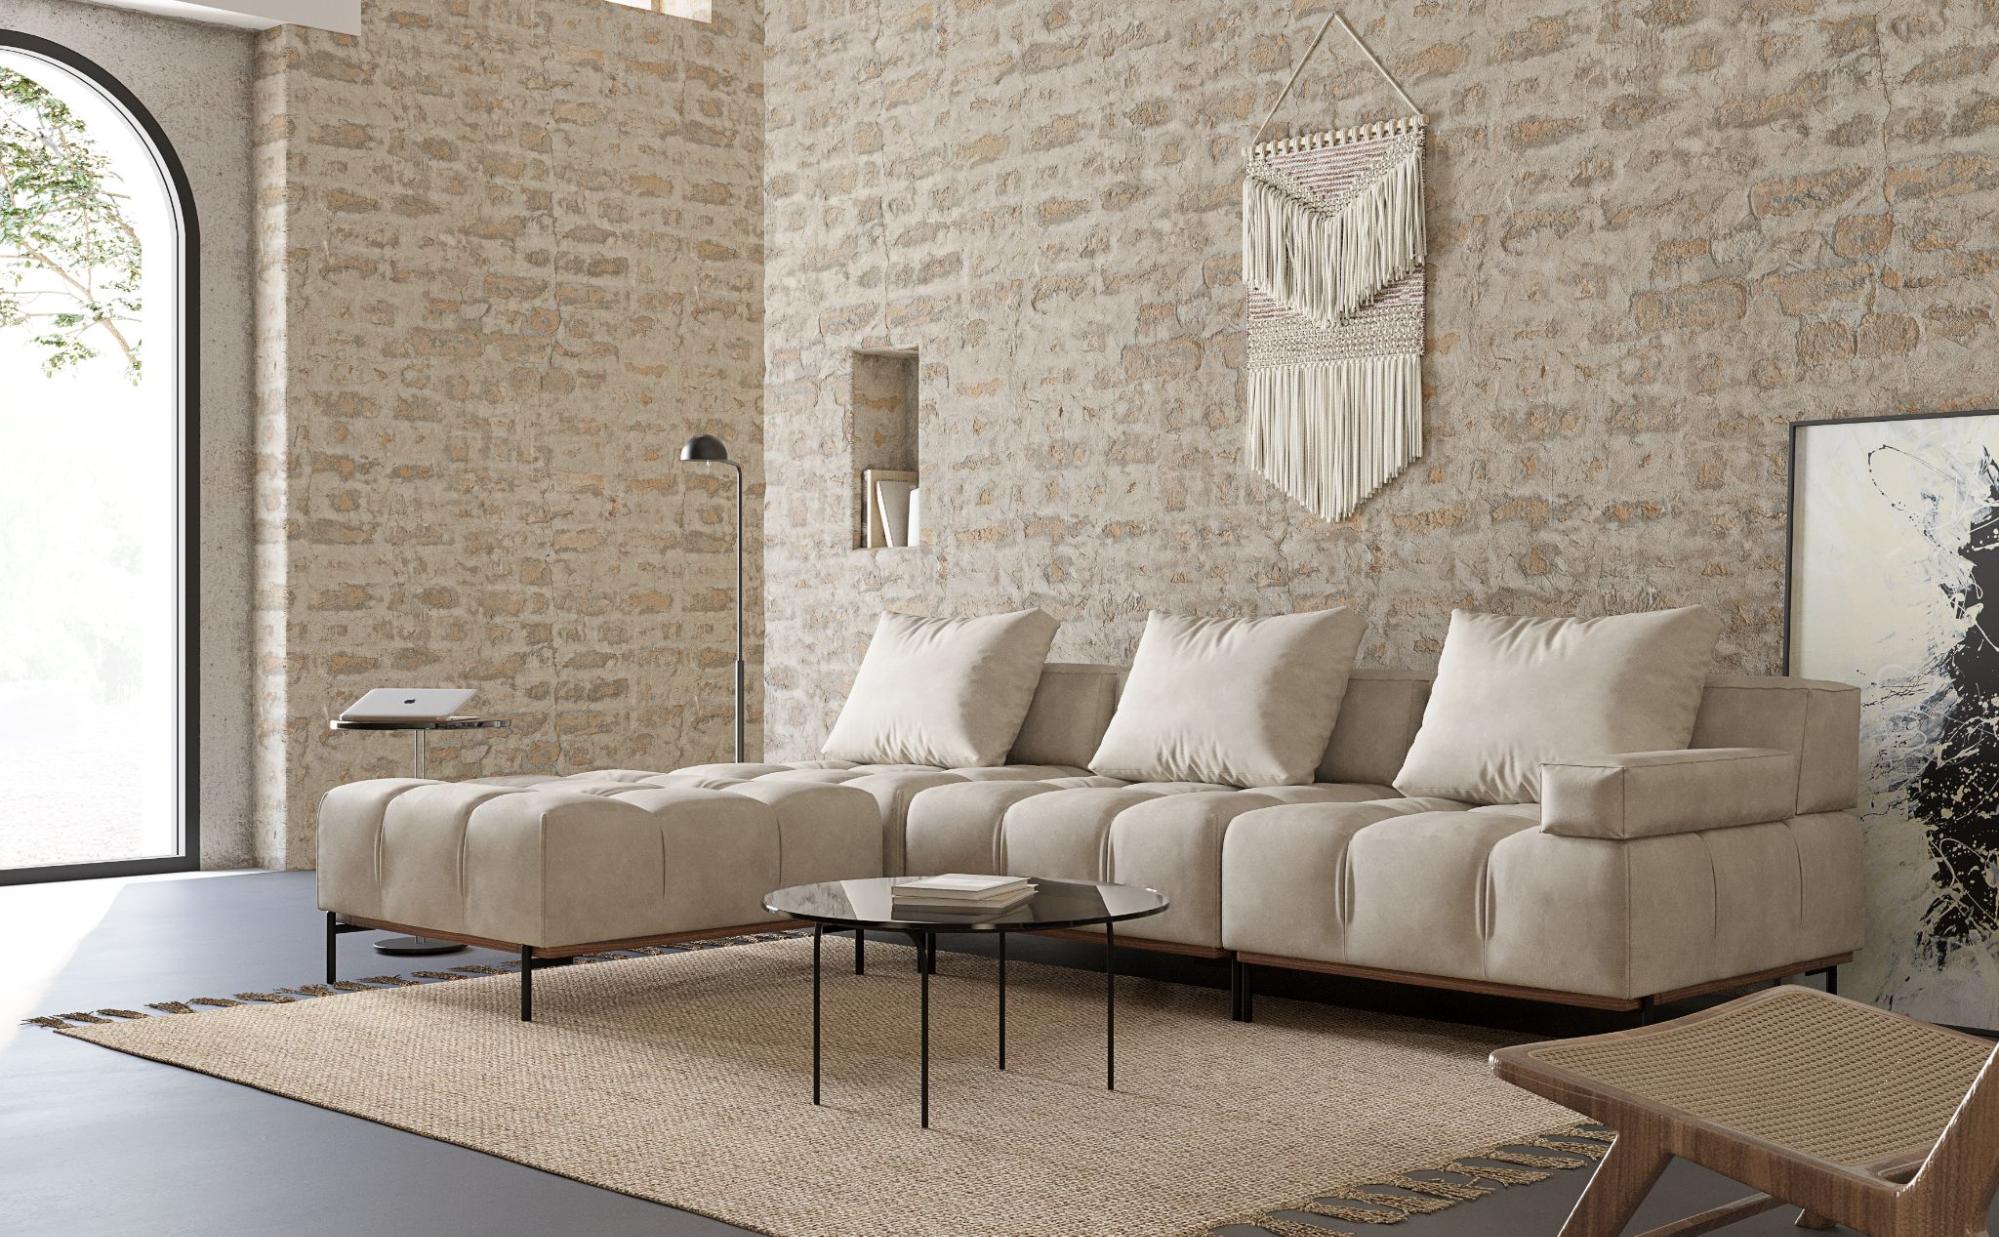 Nivala Modular Sofa by Acanva